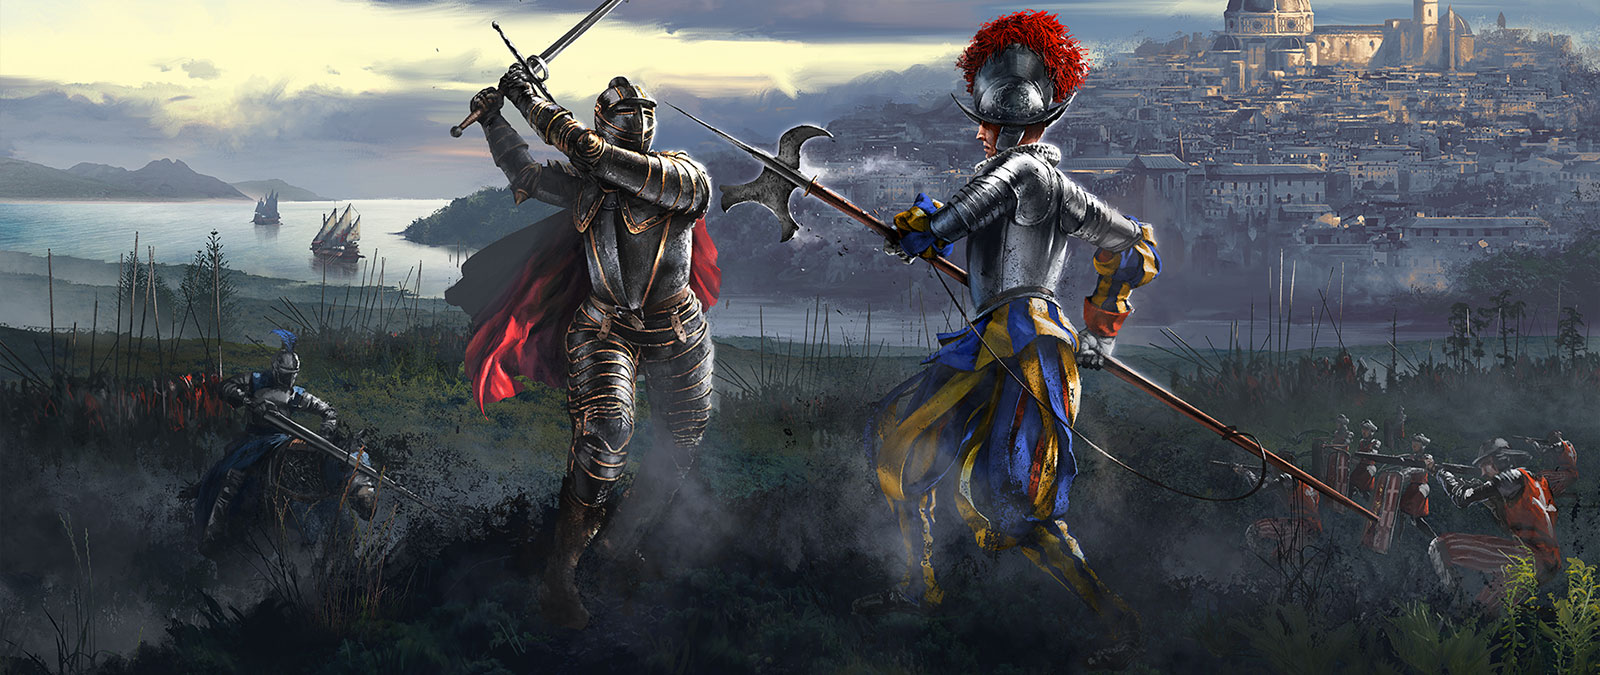 Dois cavaleiros enfrentam-se enquanto os seus exércitos se preparam para lutar.